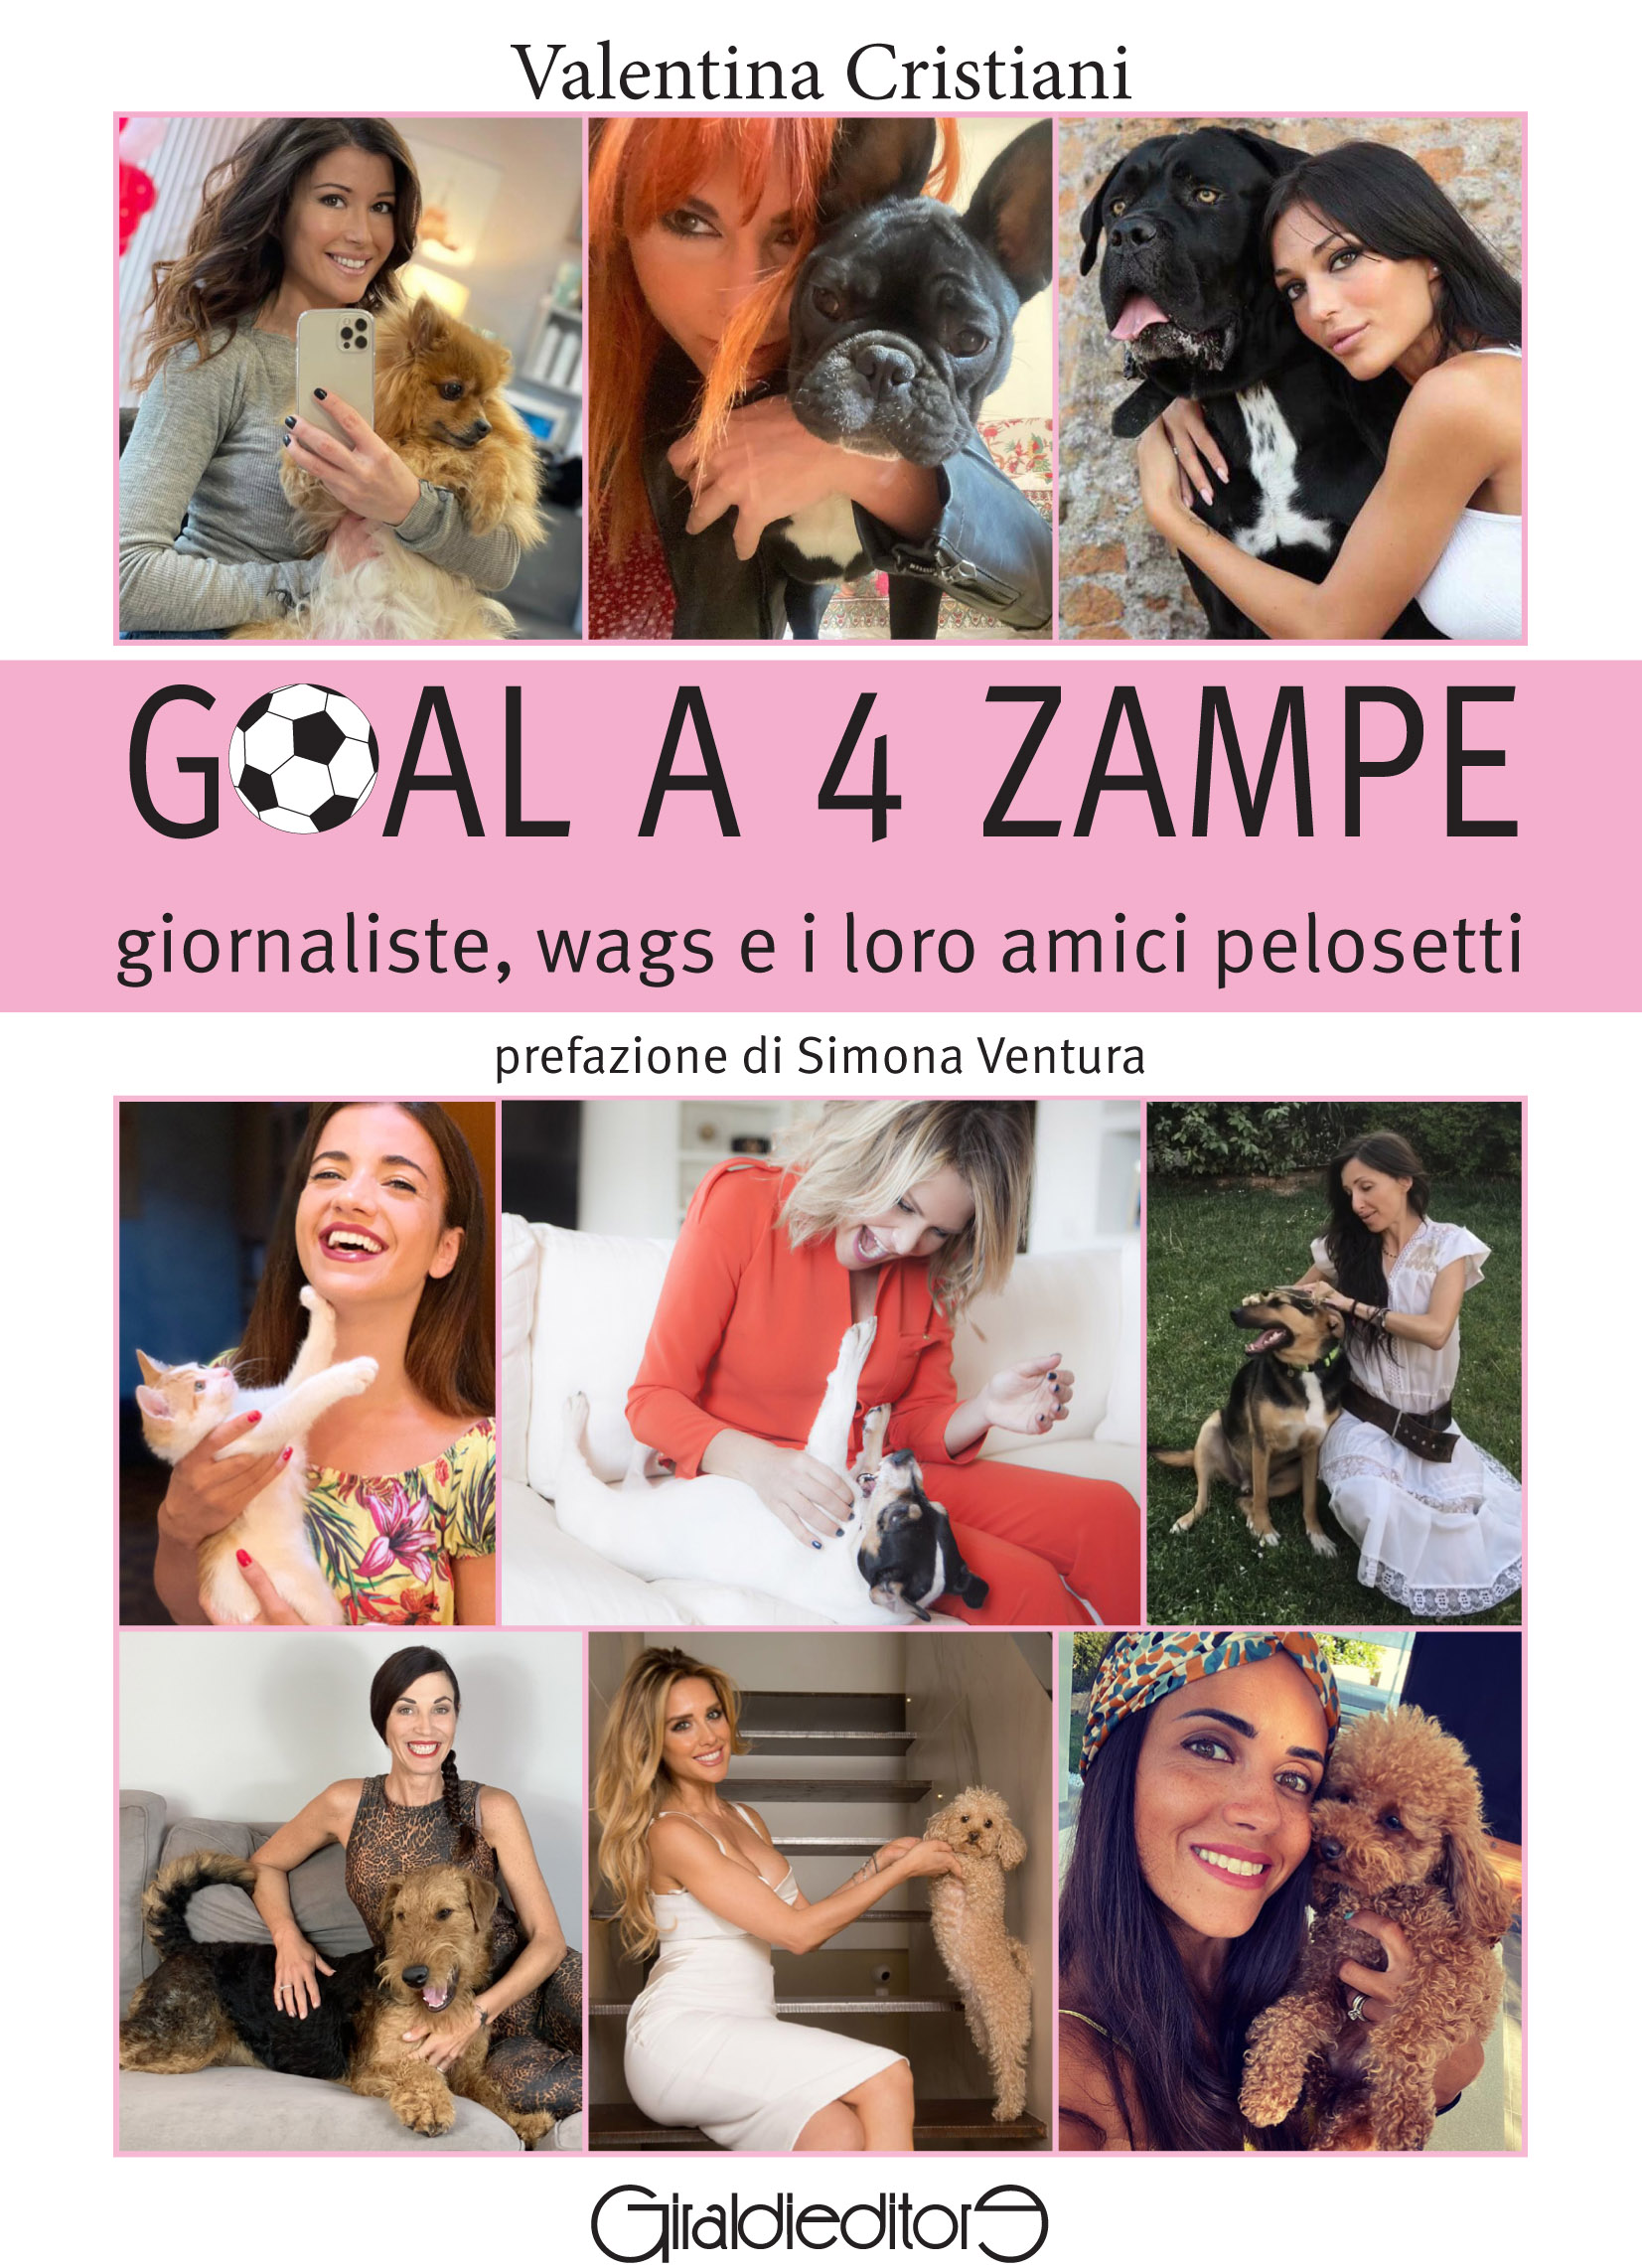 Valentina Cristiani presenta il suo libro “Goal a 4 zampe” (Giraldieditore) 